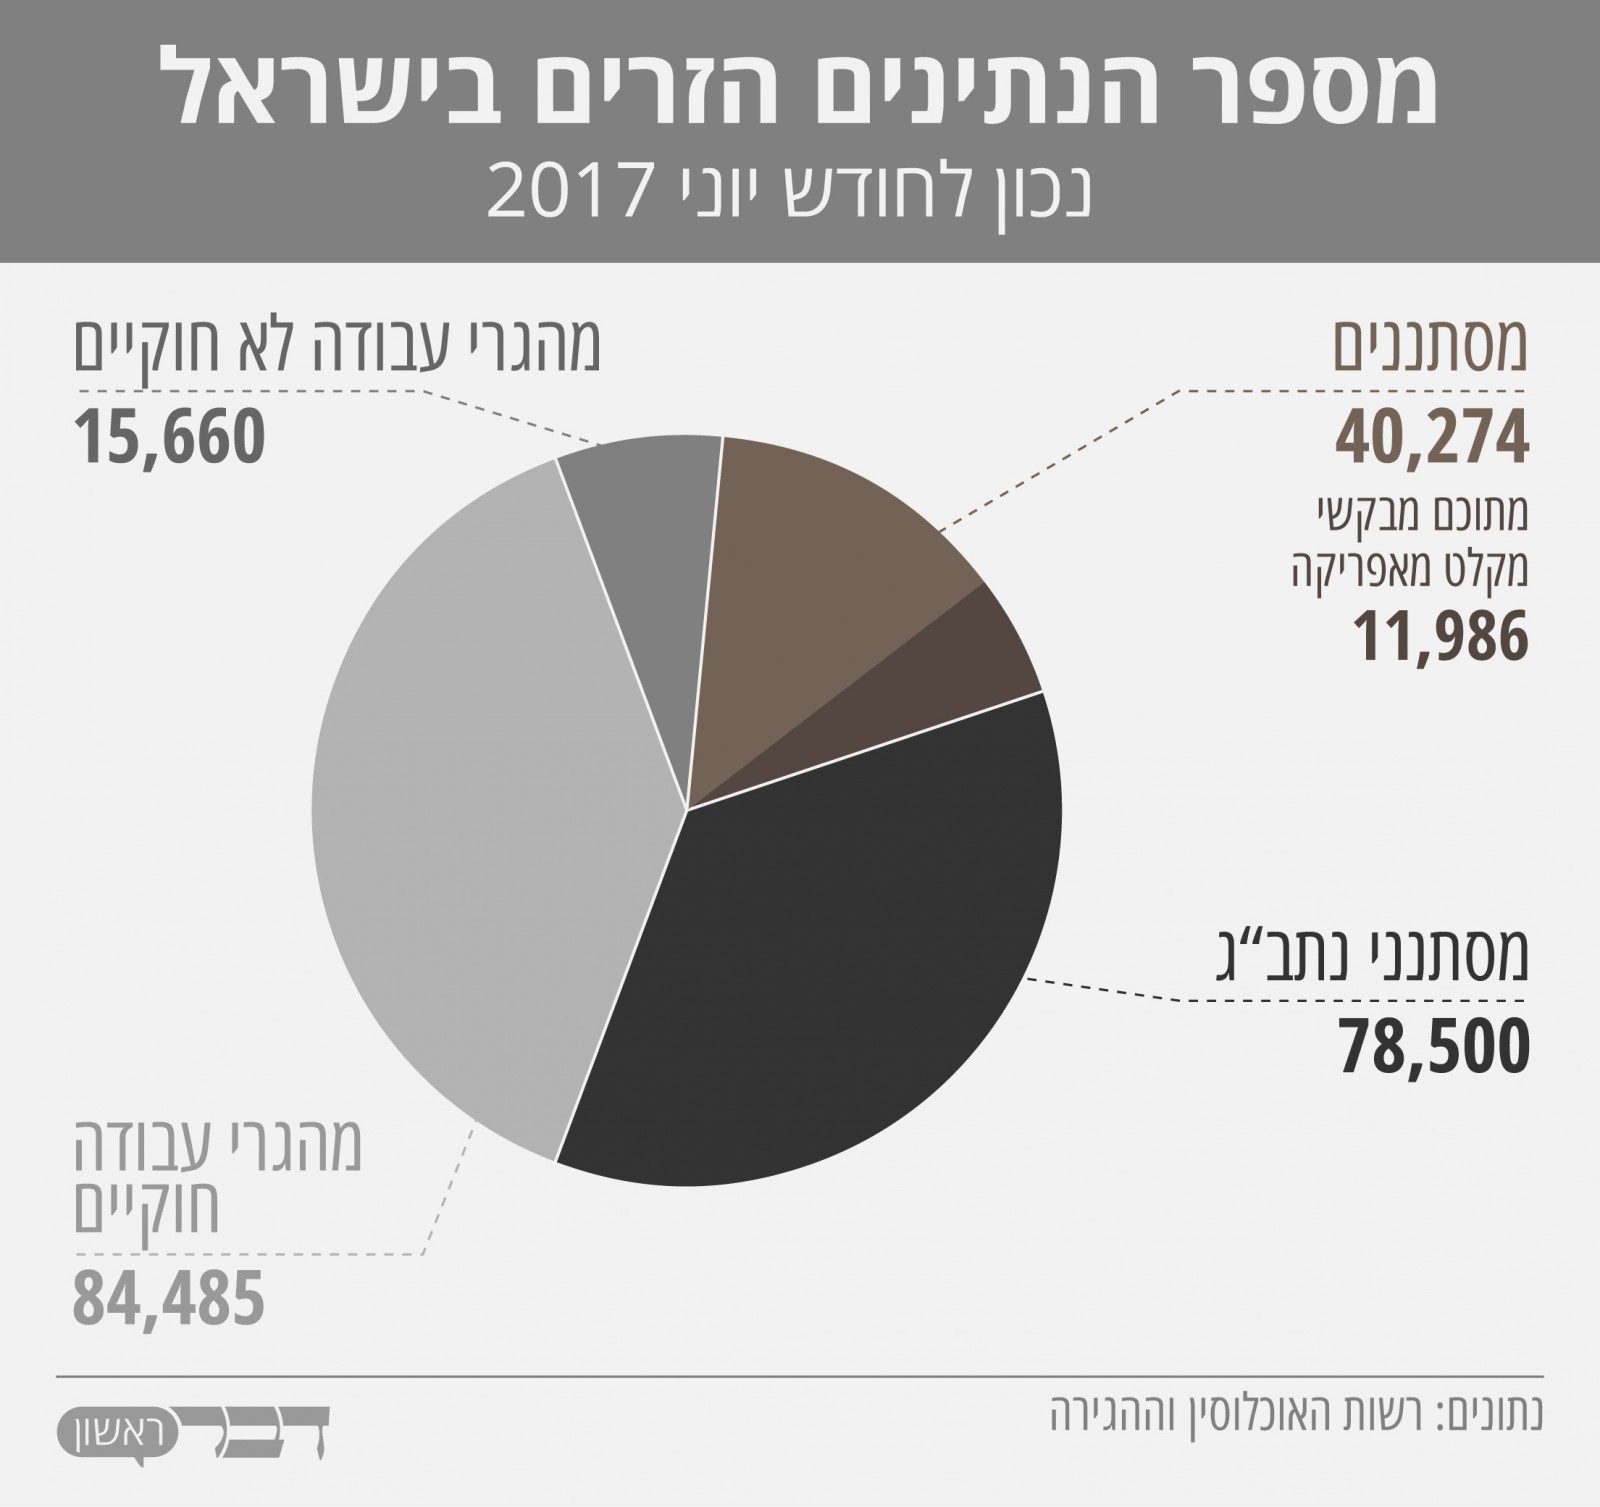 מספר הנתינים הזרים בישראל נכון ליוני 2017. נתונים: רשות האוכלוסין וההגירה (גרפיקה: אידאה)